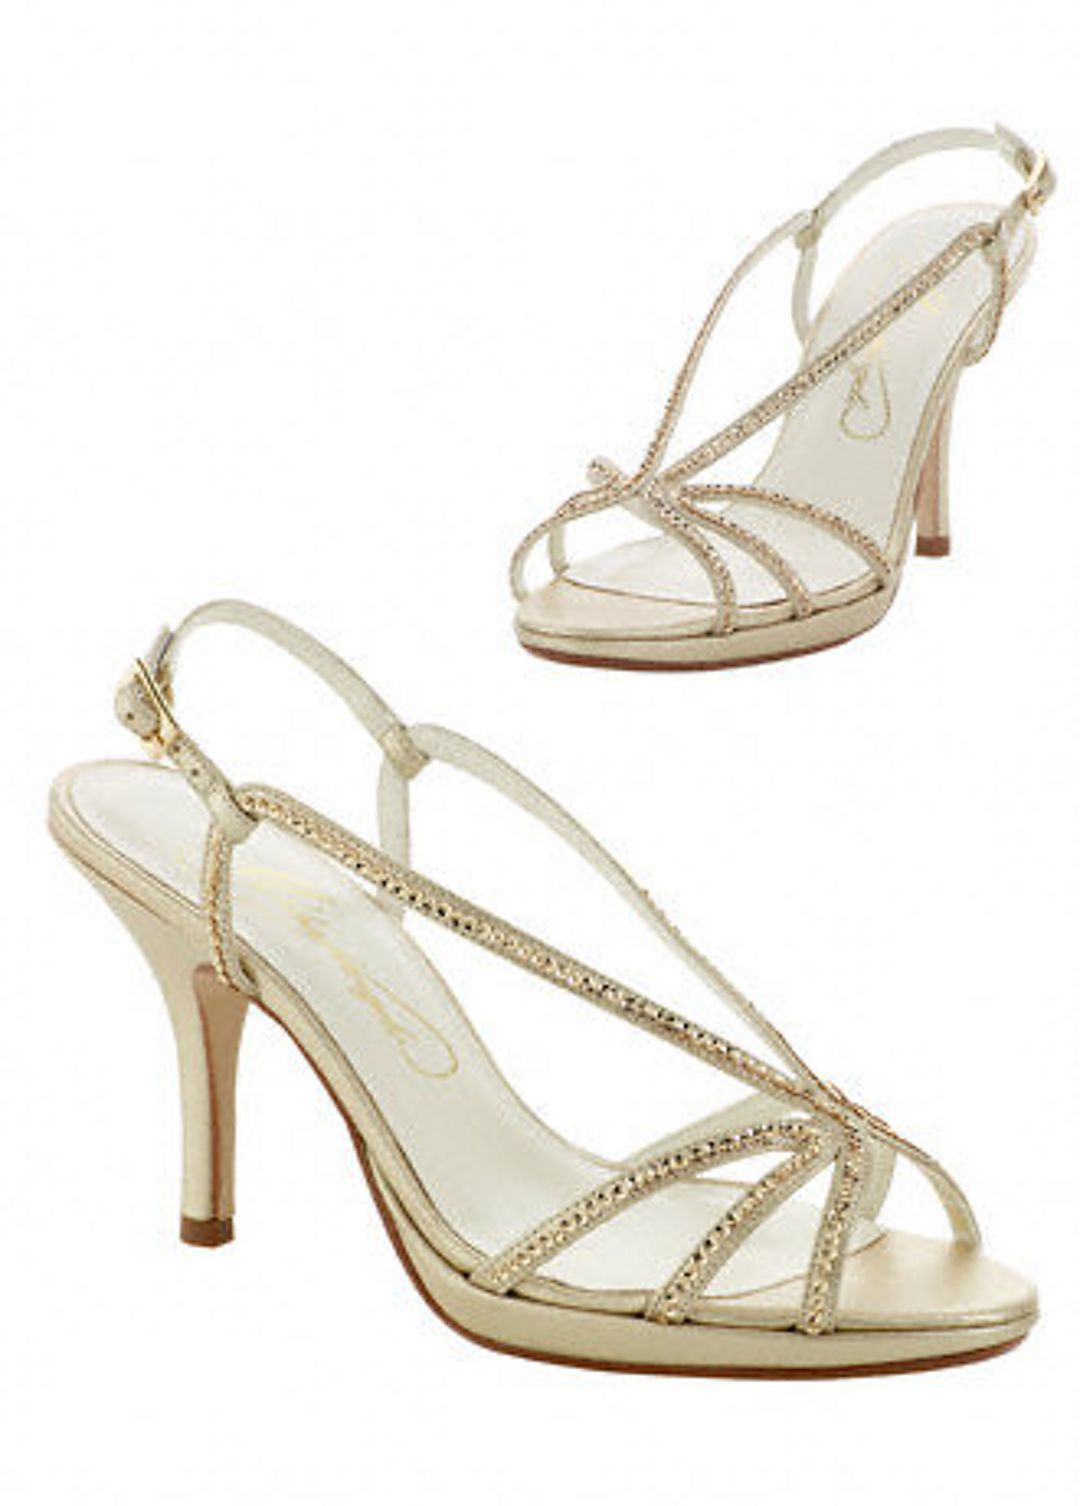 High heel metallic sandal with sequins Image